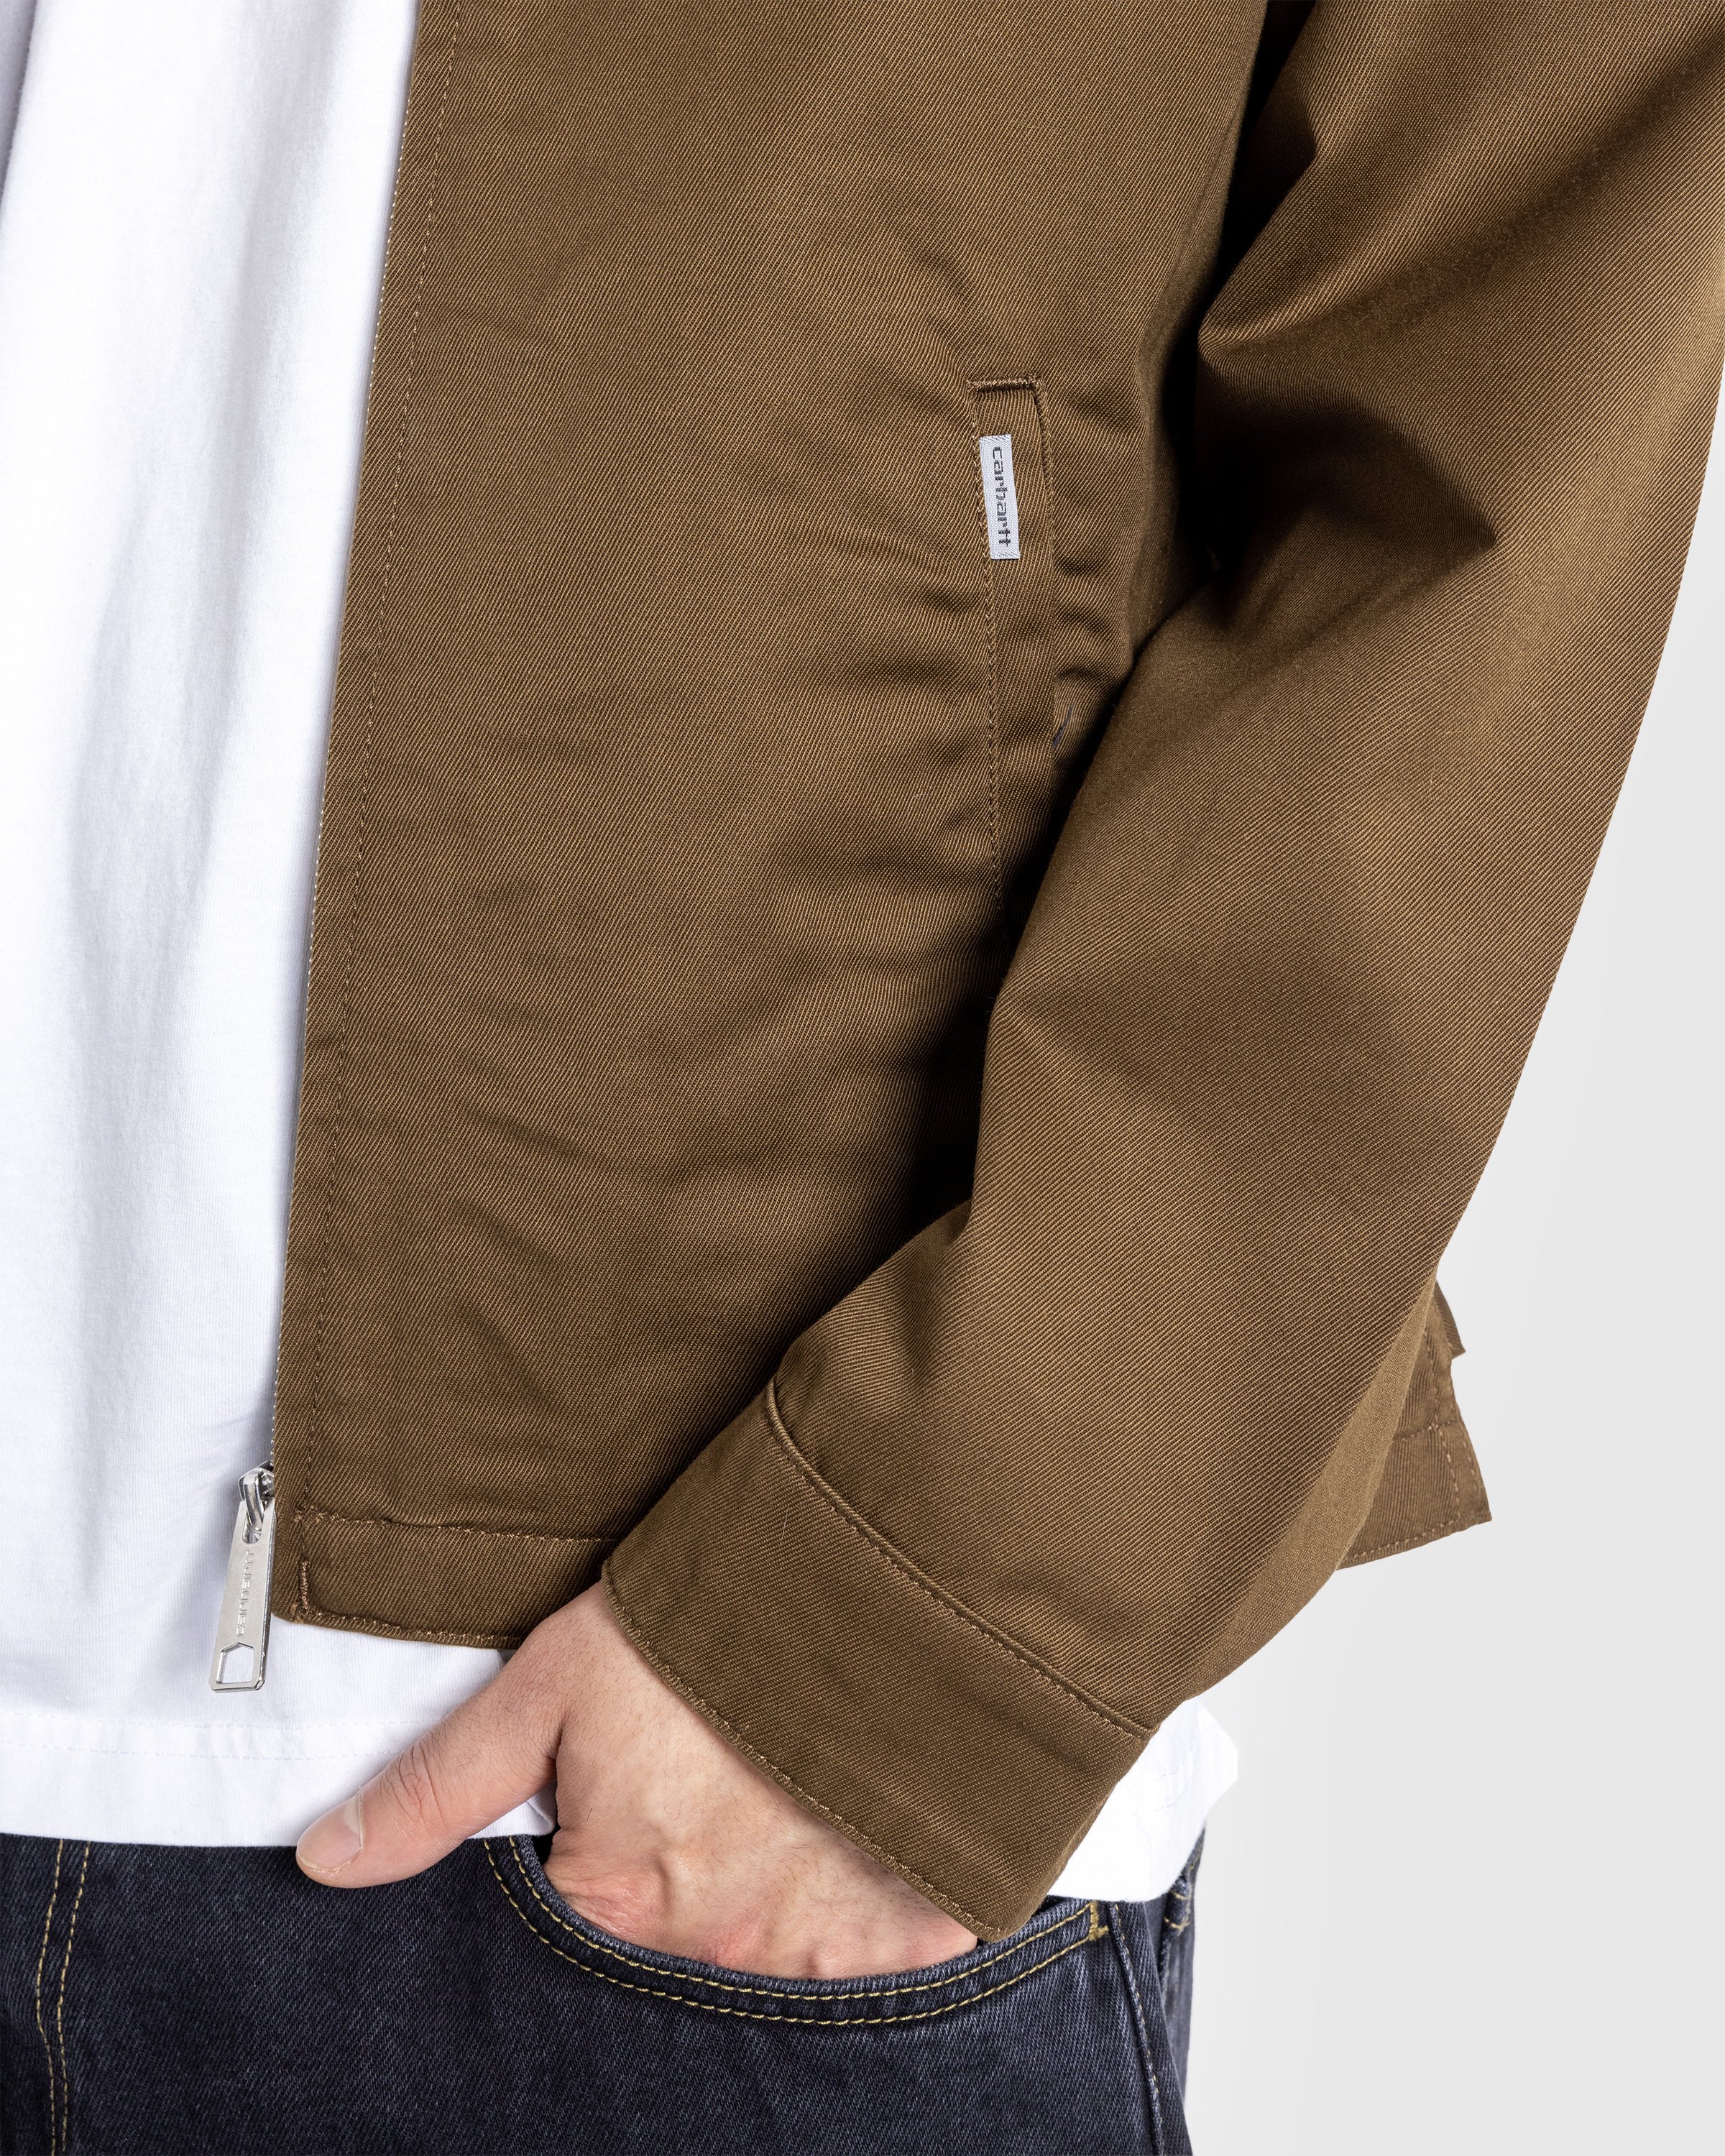 Carhartt WIP - Modular Jacket Lumber /rinsed - Clothing - Brown - Image 5